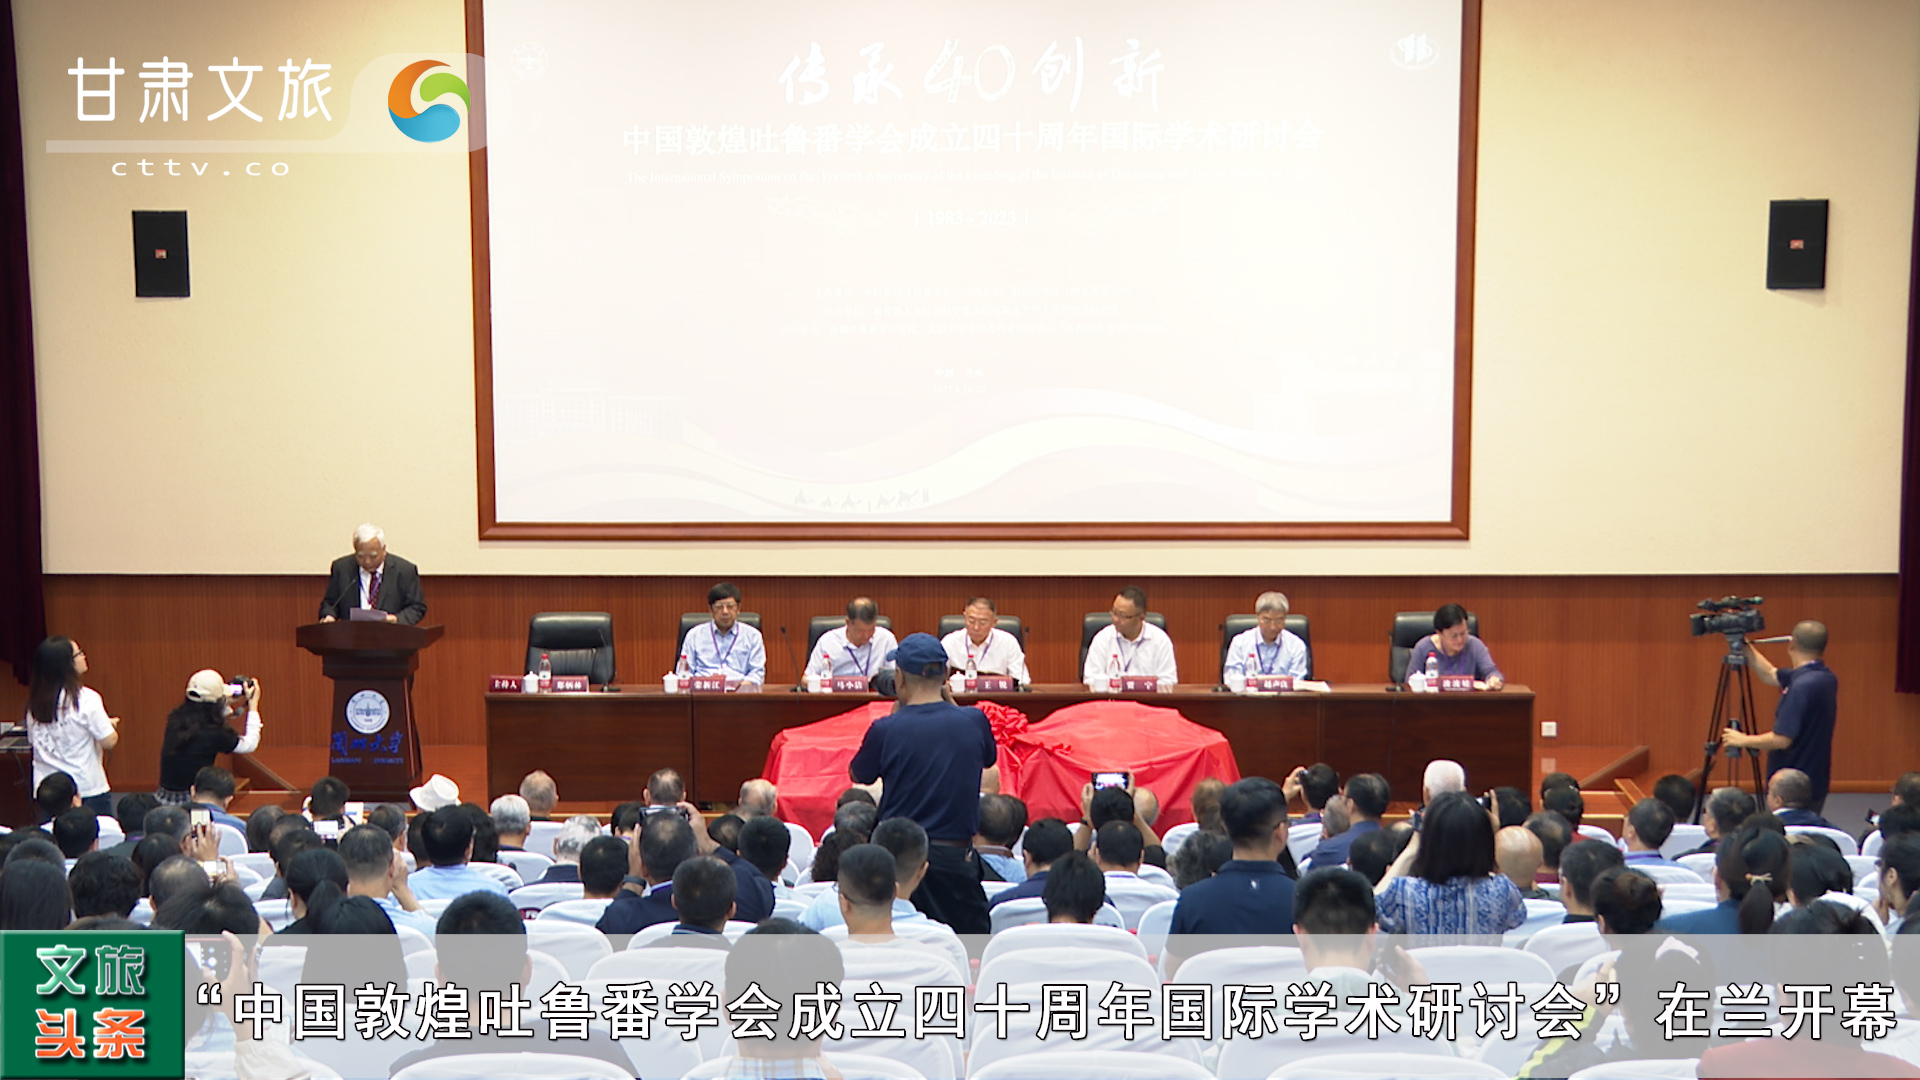 “中國敦煌吐魯番學會成立四十周年國際學術研討會”在蘭開幕